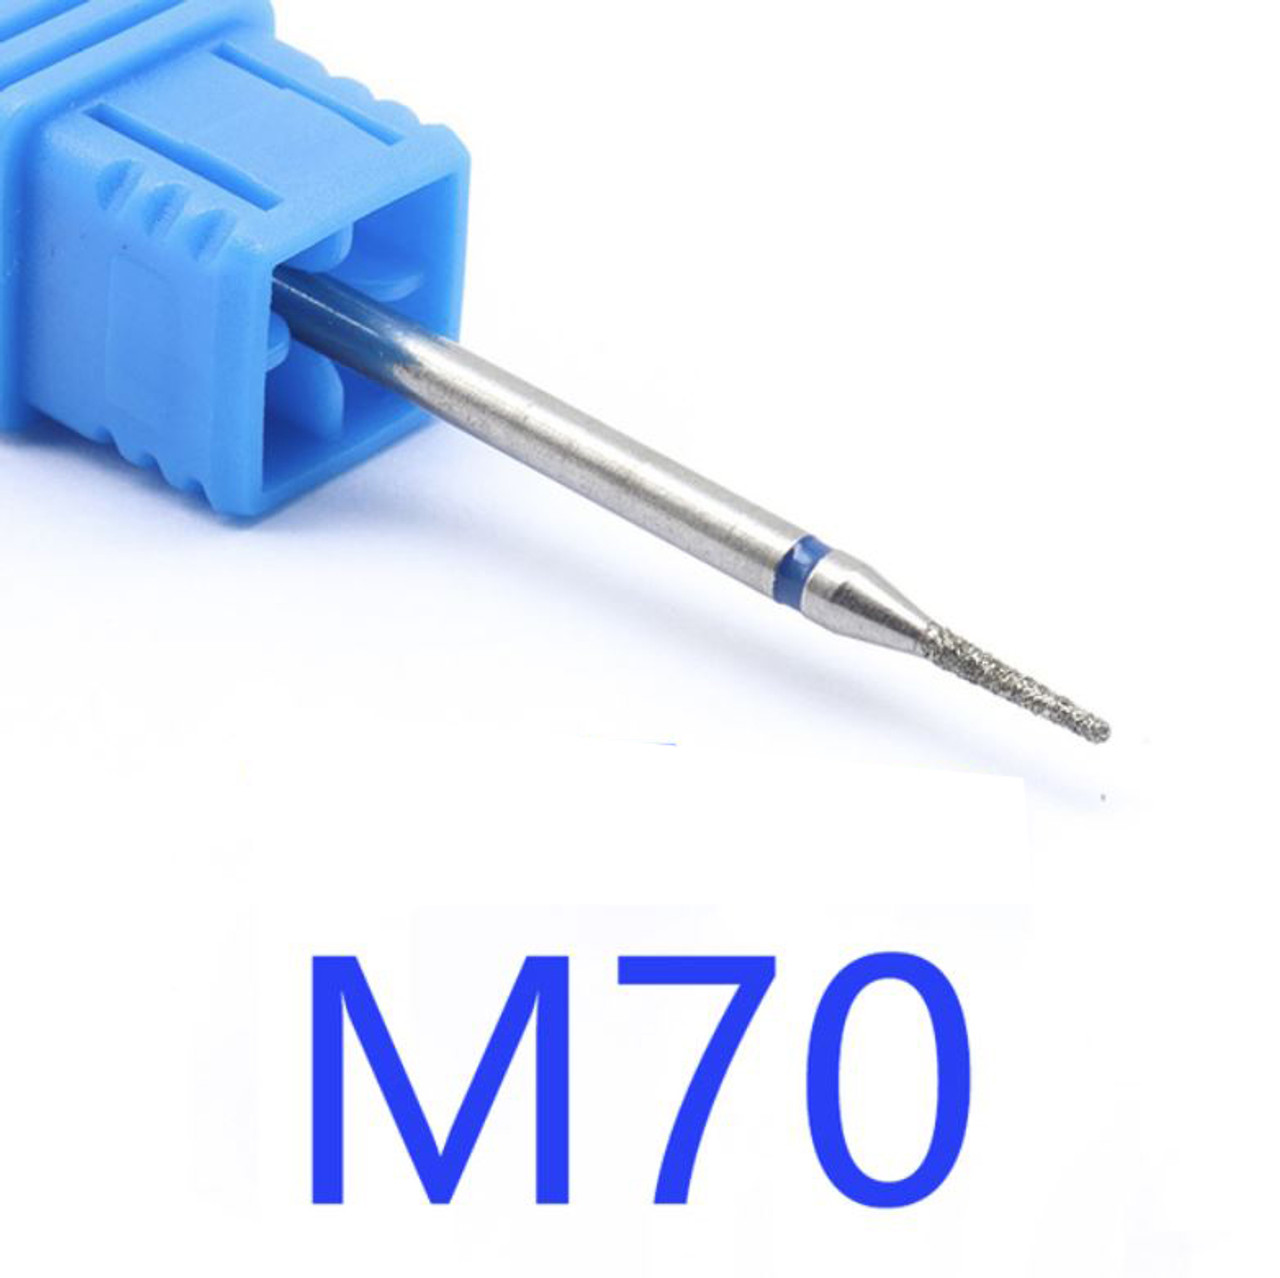 NDi beauty Diamond Drill Bit - 3/32 shank (MEDIUM) - M70